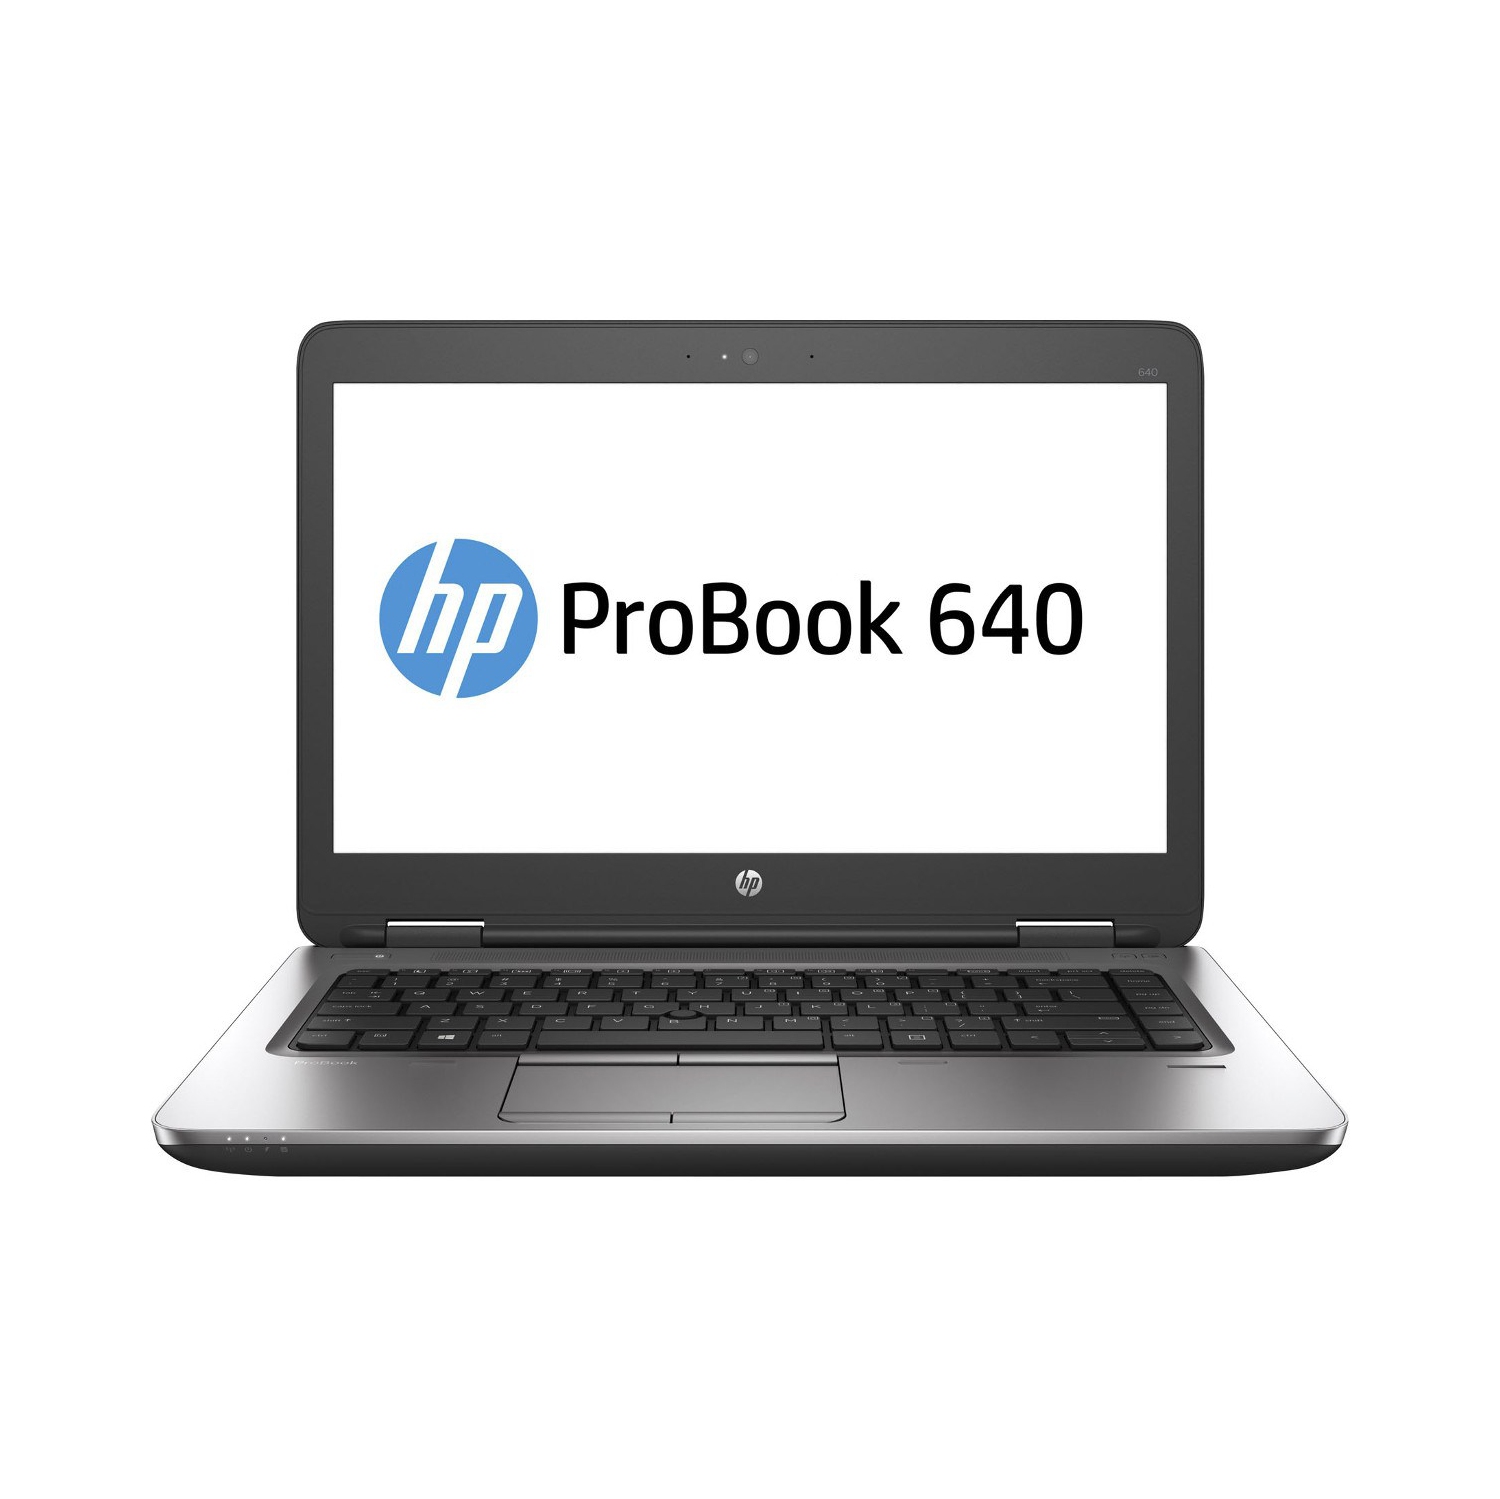 Refurbished (Excellent) - HP ProBook 640 G2 14" Laptop, Intel Core i7 6600U up to 3.4G, 16G DDR4, 500G, VGA, DP, Win10 Pro 64 Bit (EN/FR/ES)